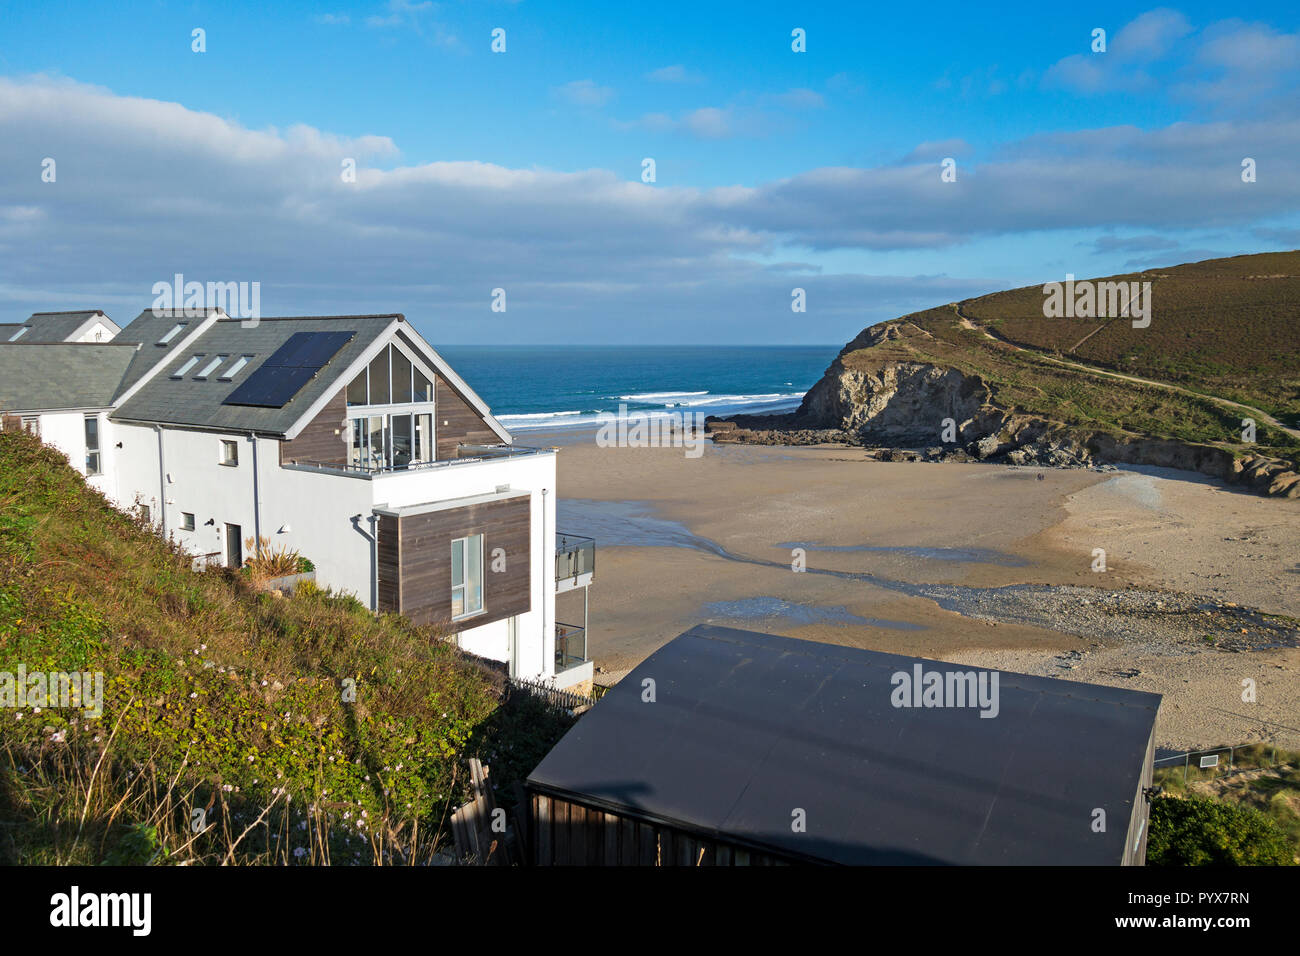 Ferienwohnungen mit Blick auf den Strand bei porthtowan in Cornwall, England, Großbritannien, Großbritannien. Stockfoto